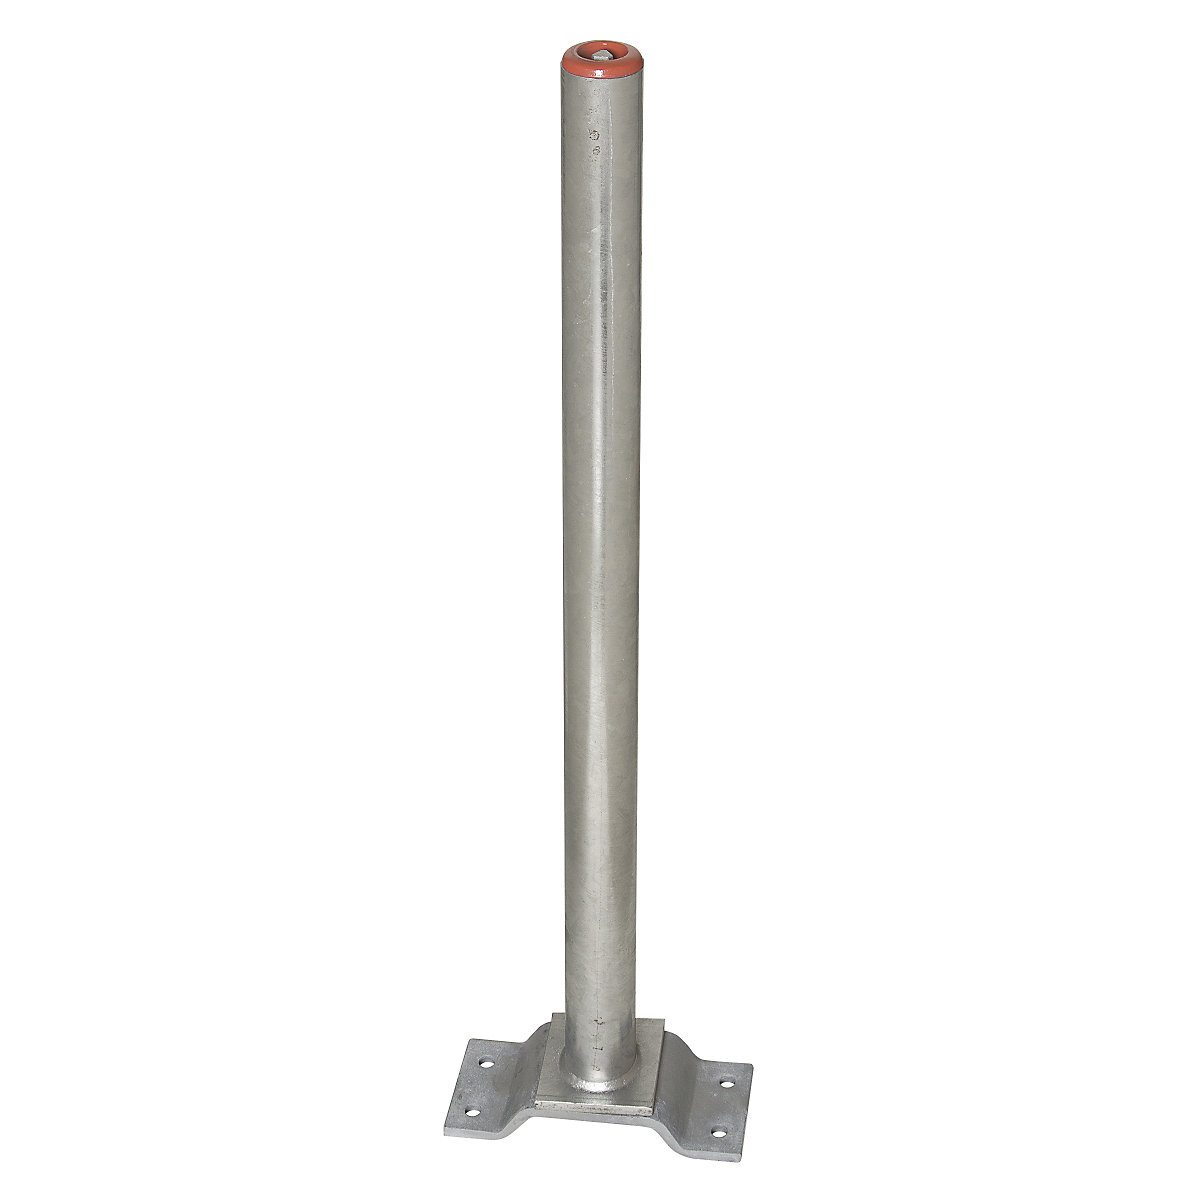 Zahradzovací stĺpik z ocele, na pripevnenie hmoždinkami, Ø 60 mm, žiarovo pozinkovaný, 2 reťazové oká-6